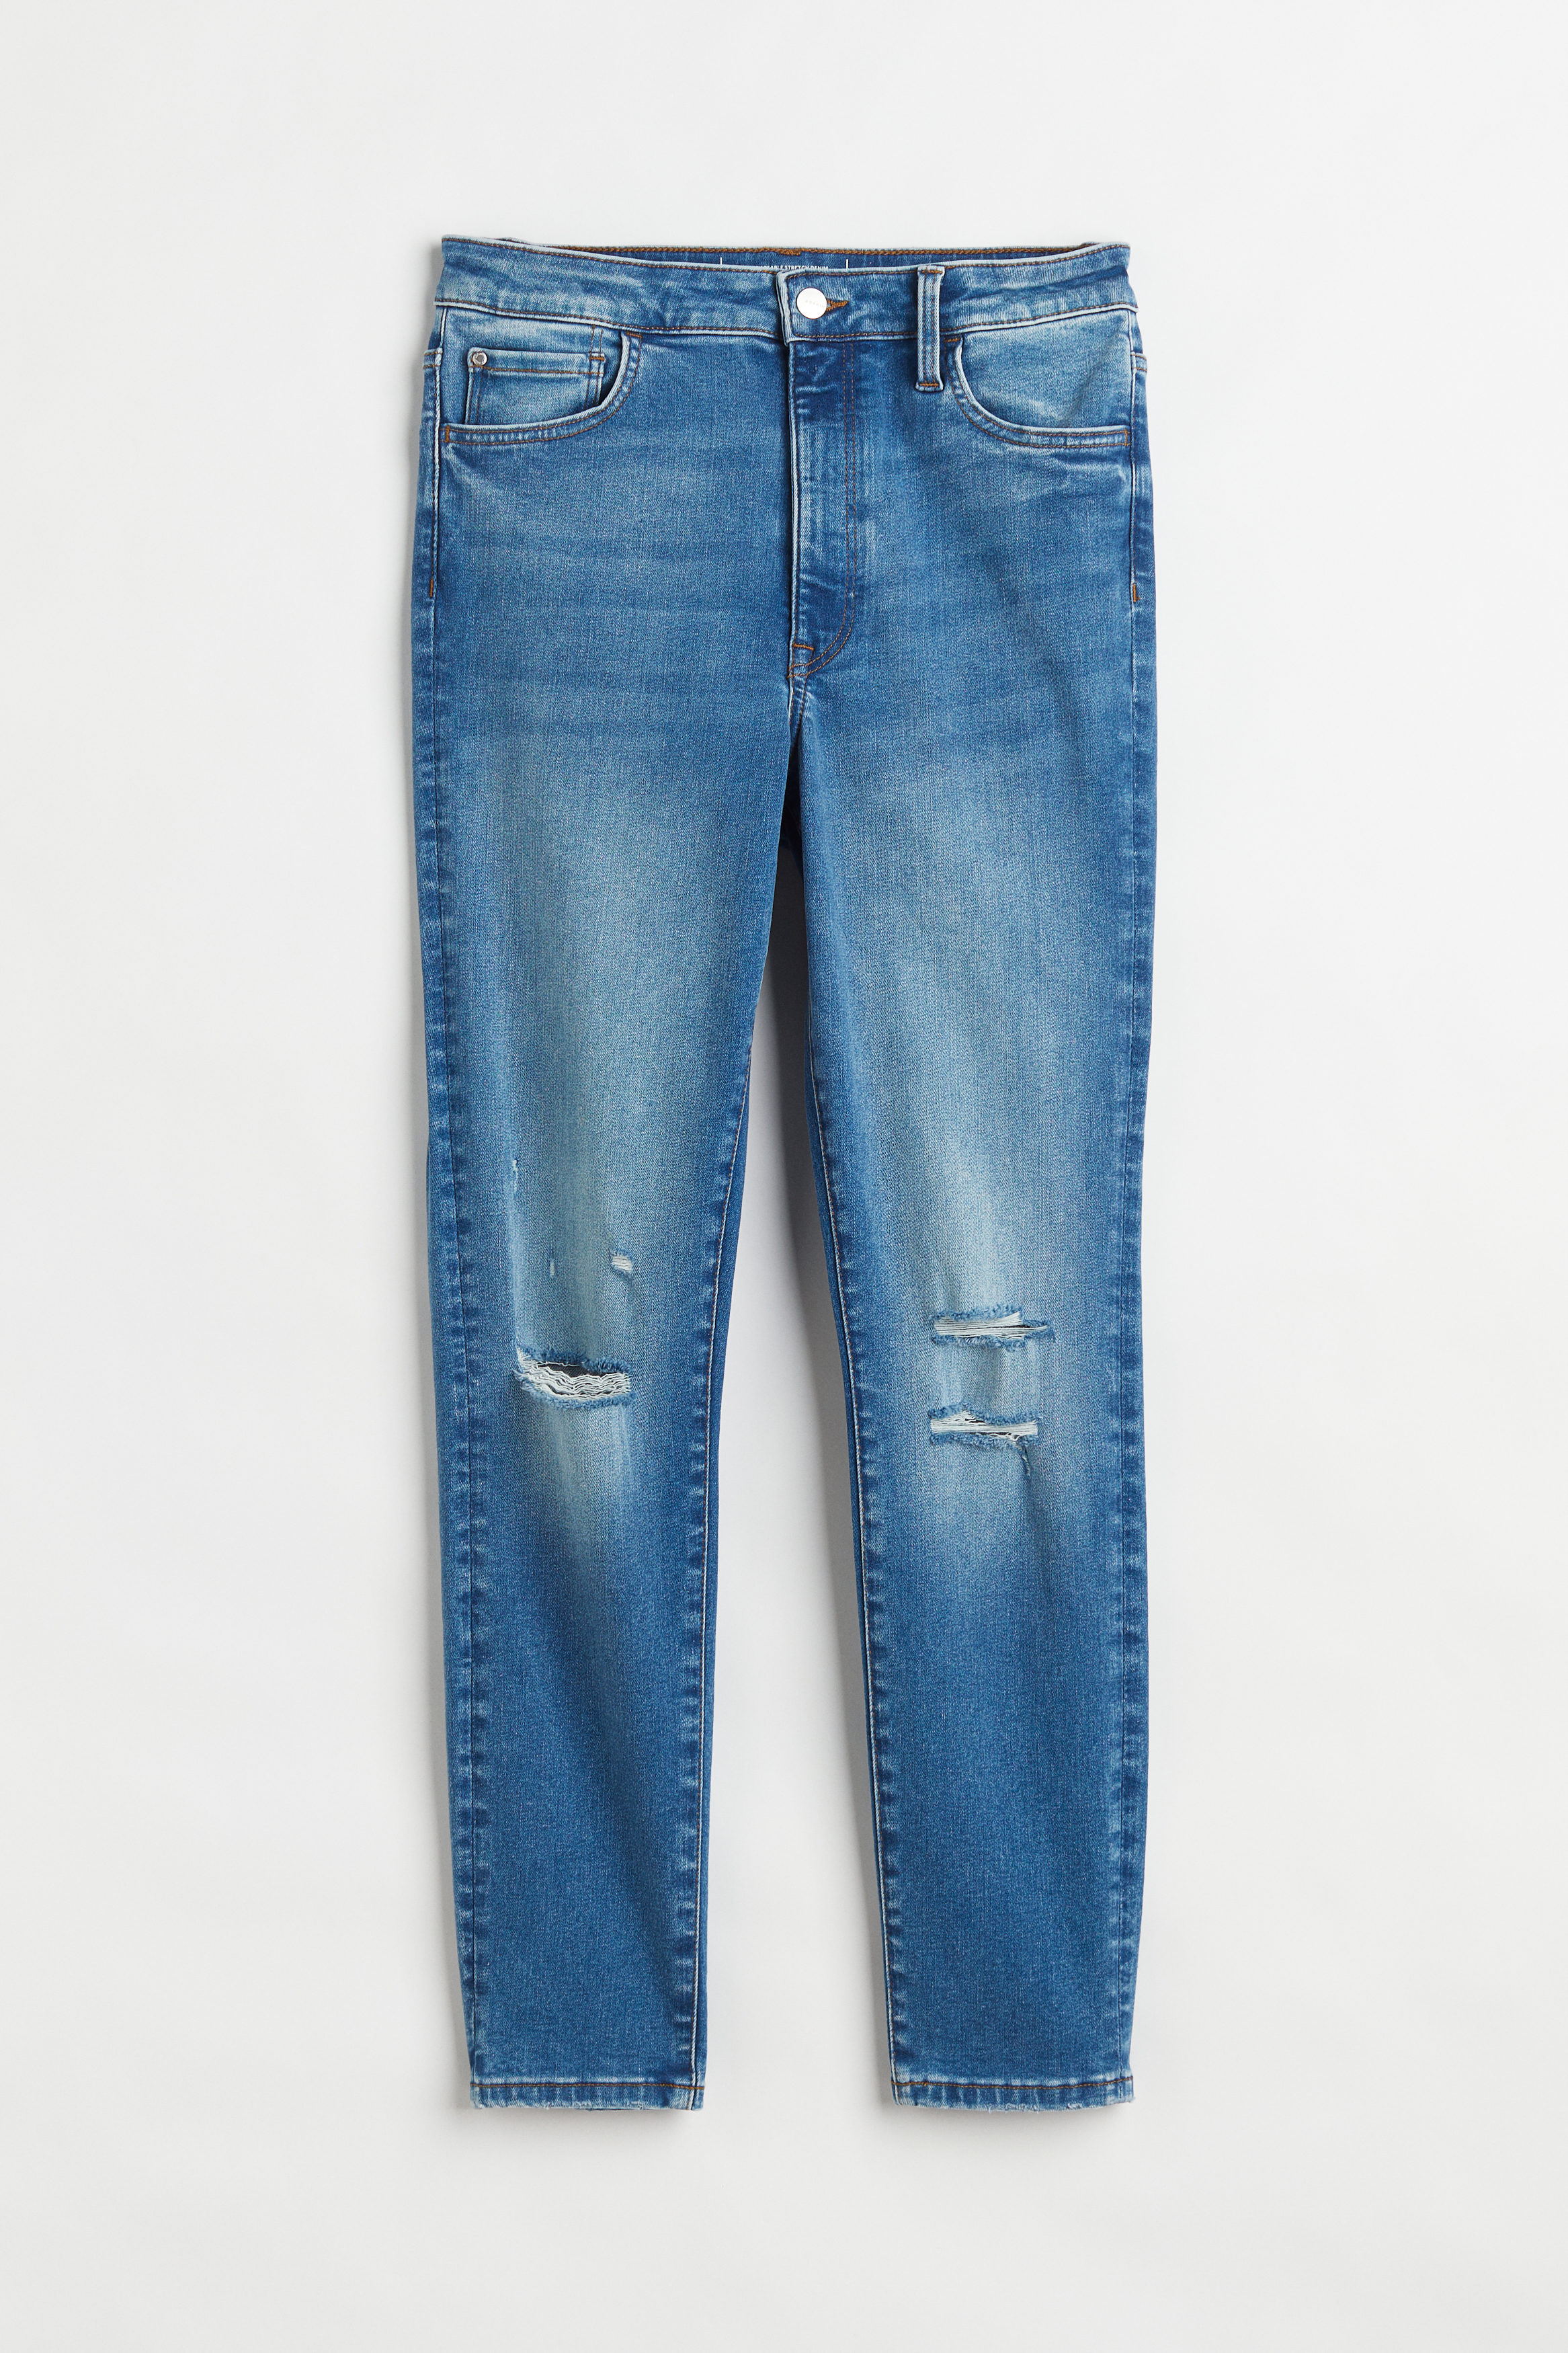 Billede af H&M True To You Skinny Ultra High Ankle Jeans Denimblå, jeans. Farve: Denim blue I størrelse XXXL